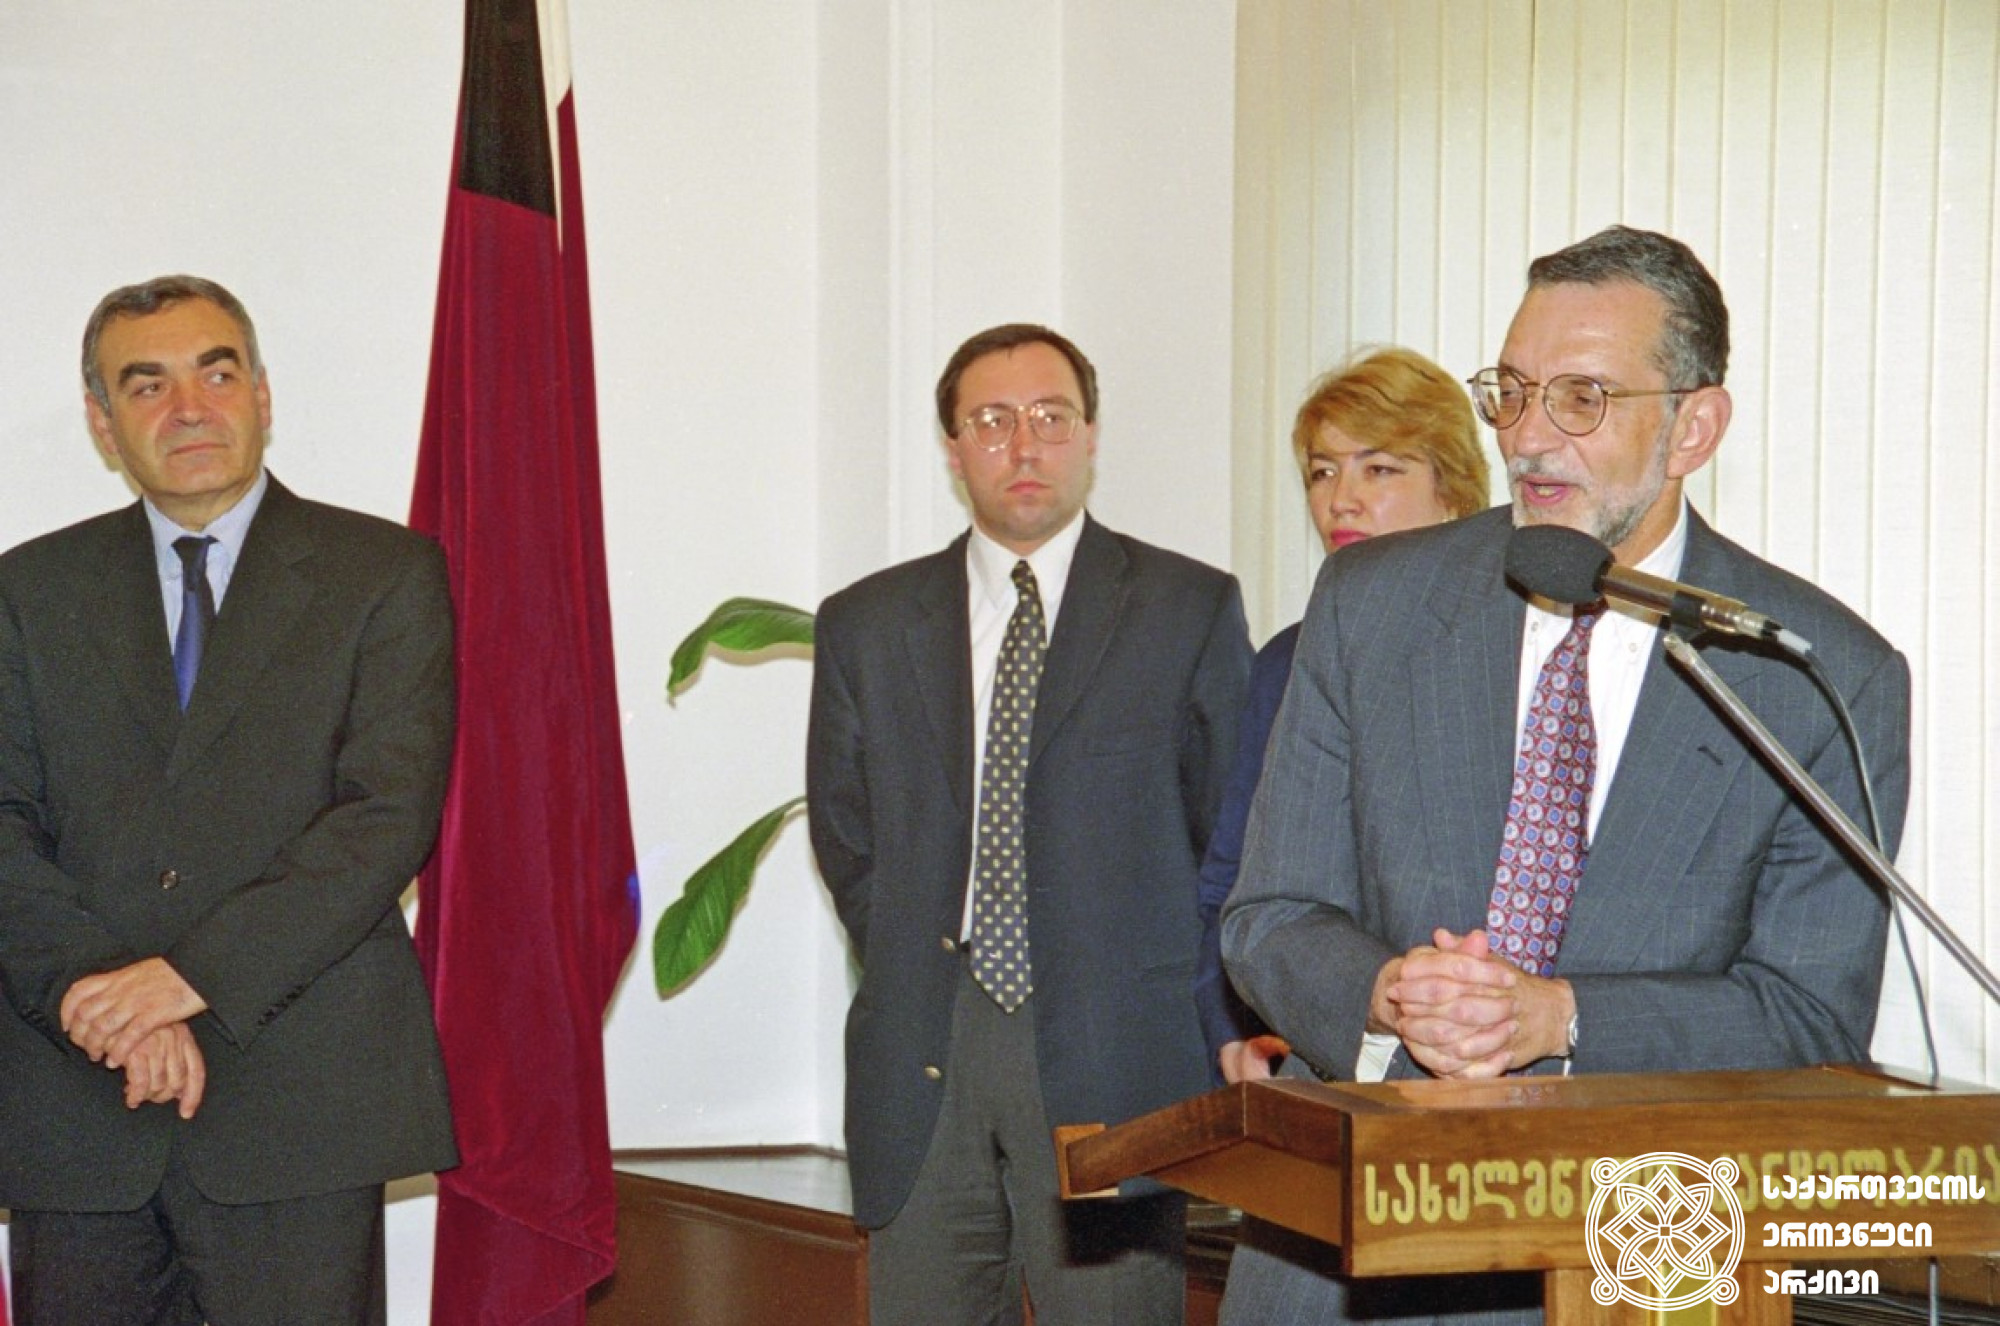 საქართველოს სახელმწიფო მინისტრი გიორგი არსენიშვილი და აშშ-ის ელჩი საქართველოში კენეტ სპენსერ იალოვიცი. <br>
თბილისი. 2001 წლის 29 ივნისი. <br>
ბესიკ კეზერაშვილის ფოტო. <br>

The Secretary of State of Georgia, Giorgi Arsenishvili, and the U.S. Ambassador to Georgia, Kenneth Spencer Yalowitz. <br>
Tbilisi. June 29, 2001. <br>
Photo by Besik Kezerashvili.